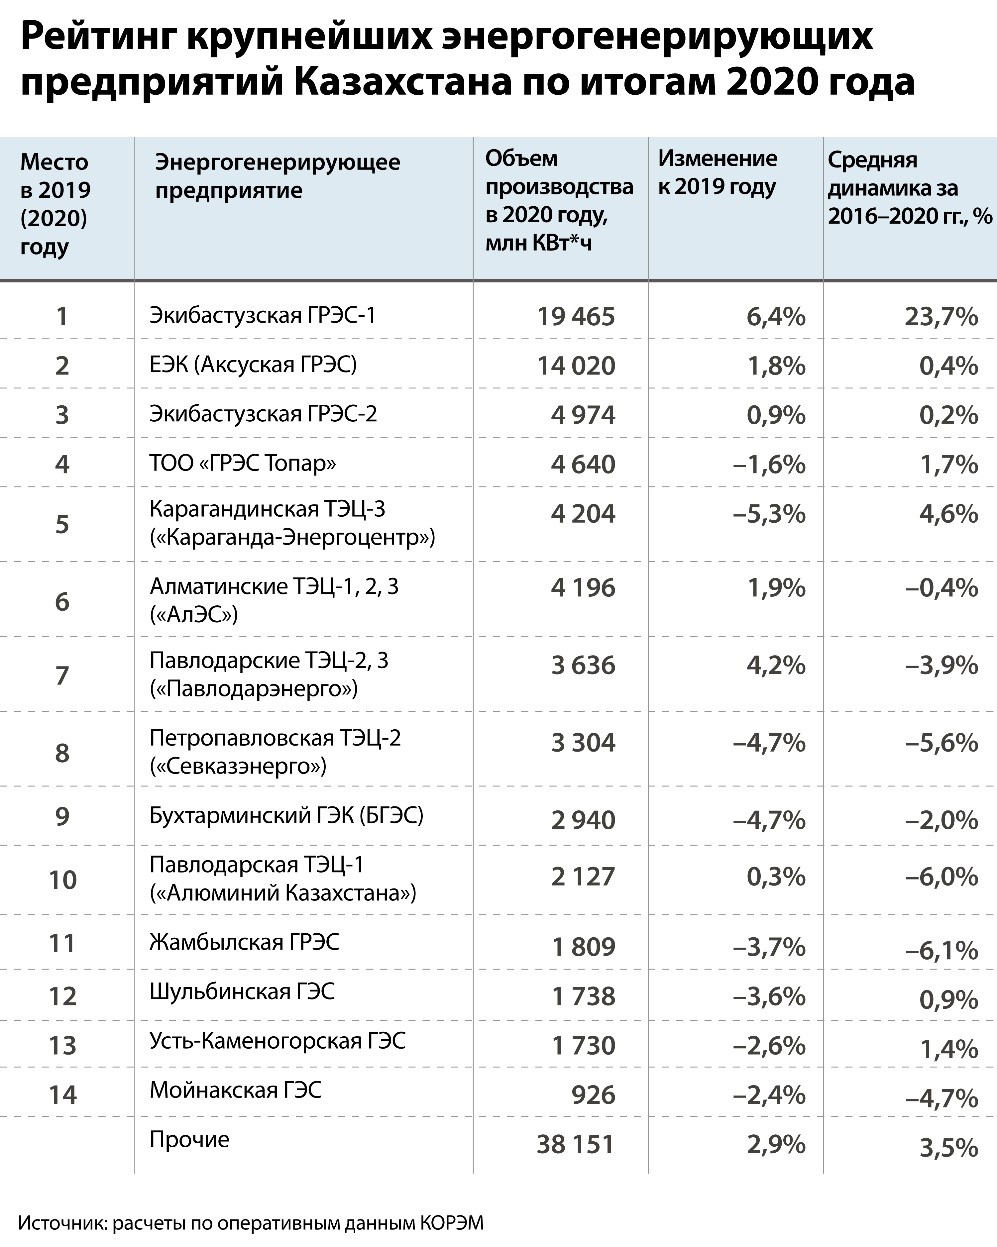 Рейтинг крупнейших энергогенерирующих предприятий Казахстана по итогам 2020